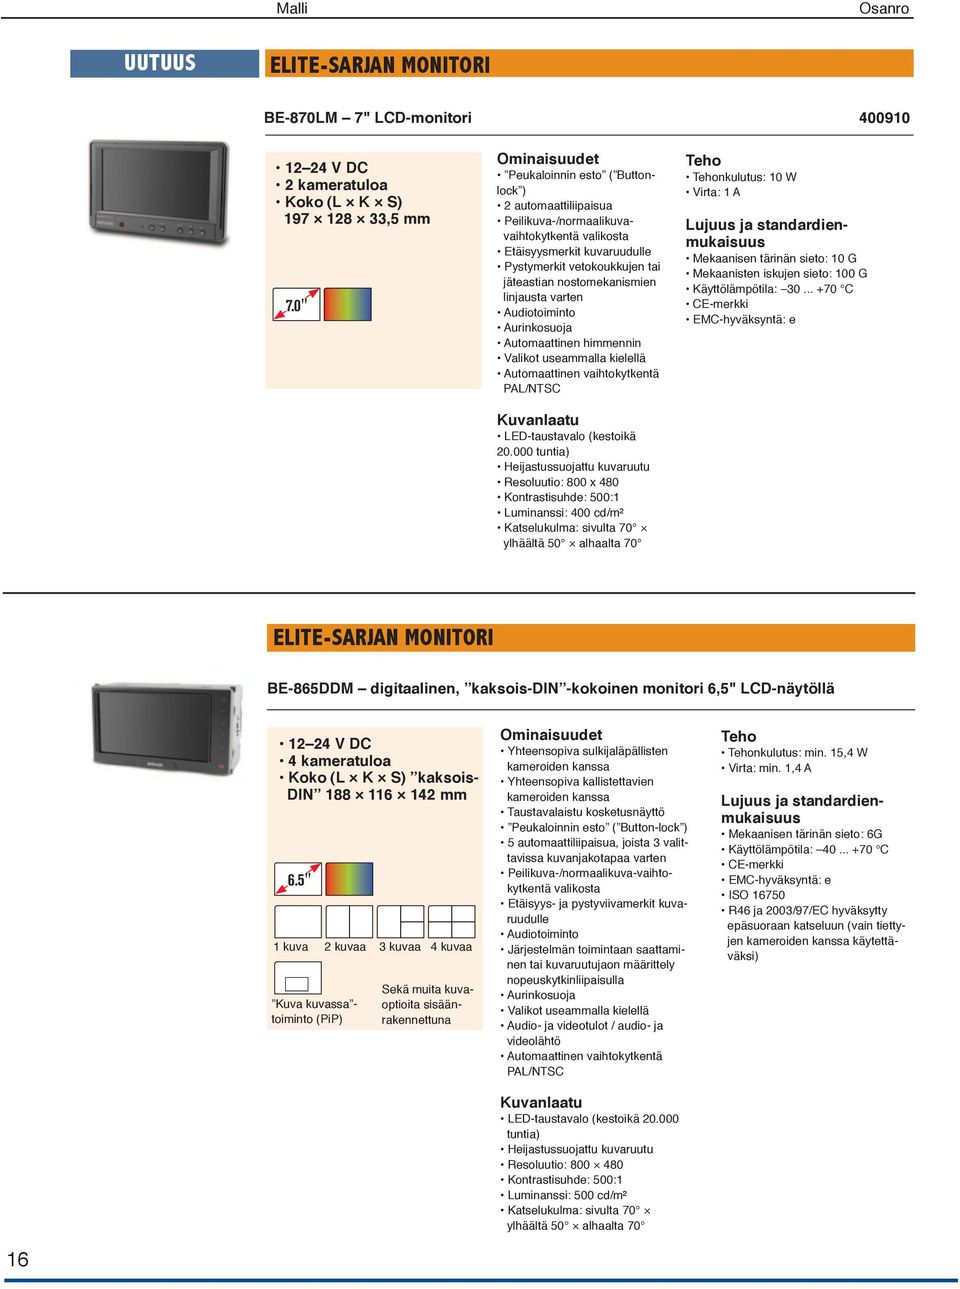 linjausta varten Audiotoiminto Aurinkosuoja Automaattinen himmennin Valikot useammalla kielellä Automaattinen vaihtokytkentä PAL/NTSC Kuvanlaatu LED-taustavalo (kestoikä 20.